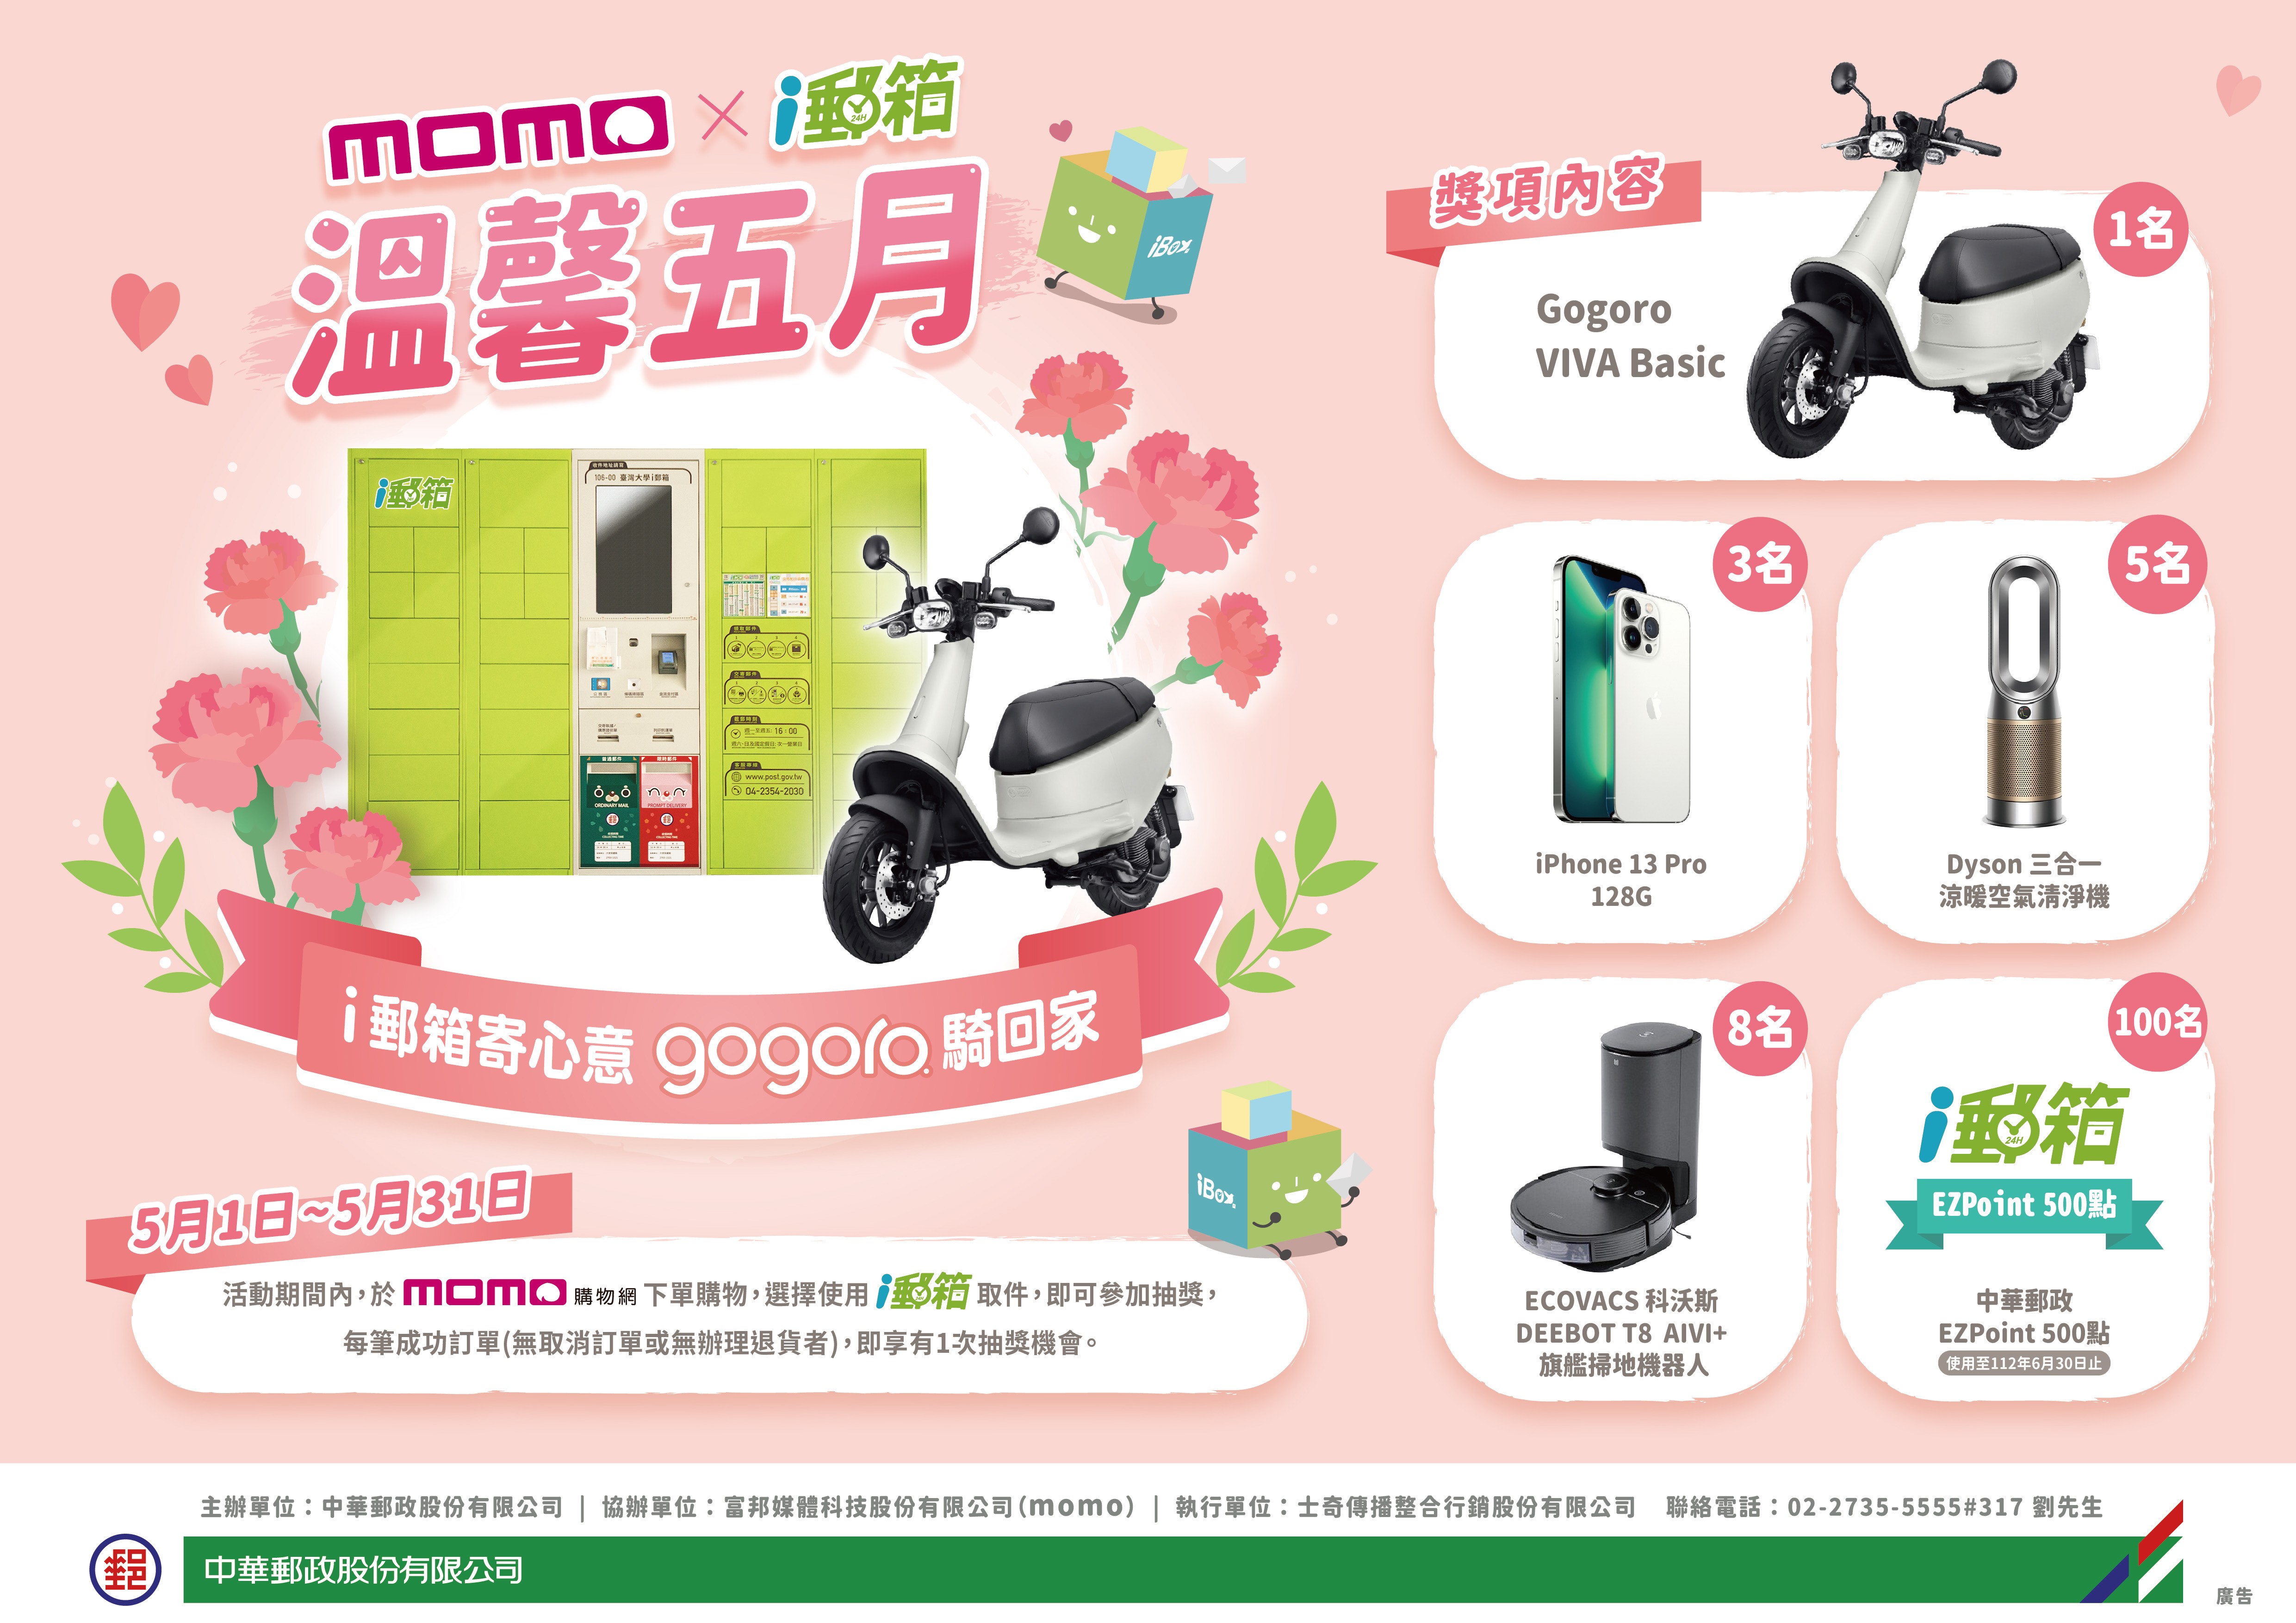 momo購物網訂單i郵箱取件  就有機會將Gogoro騎回家